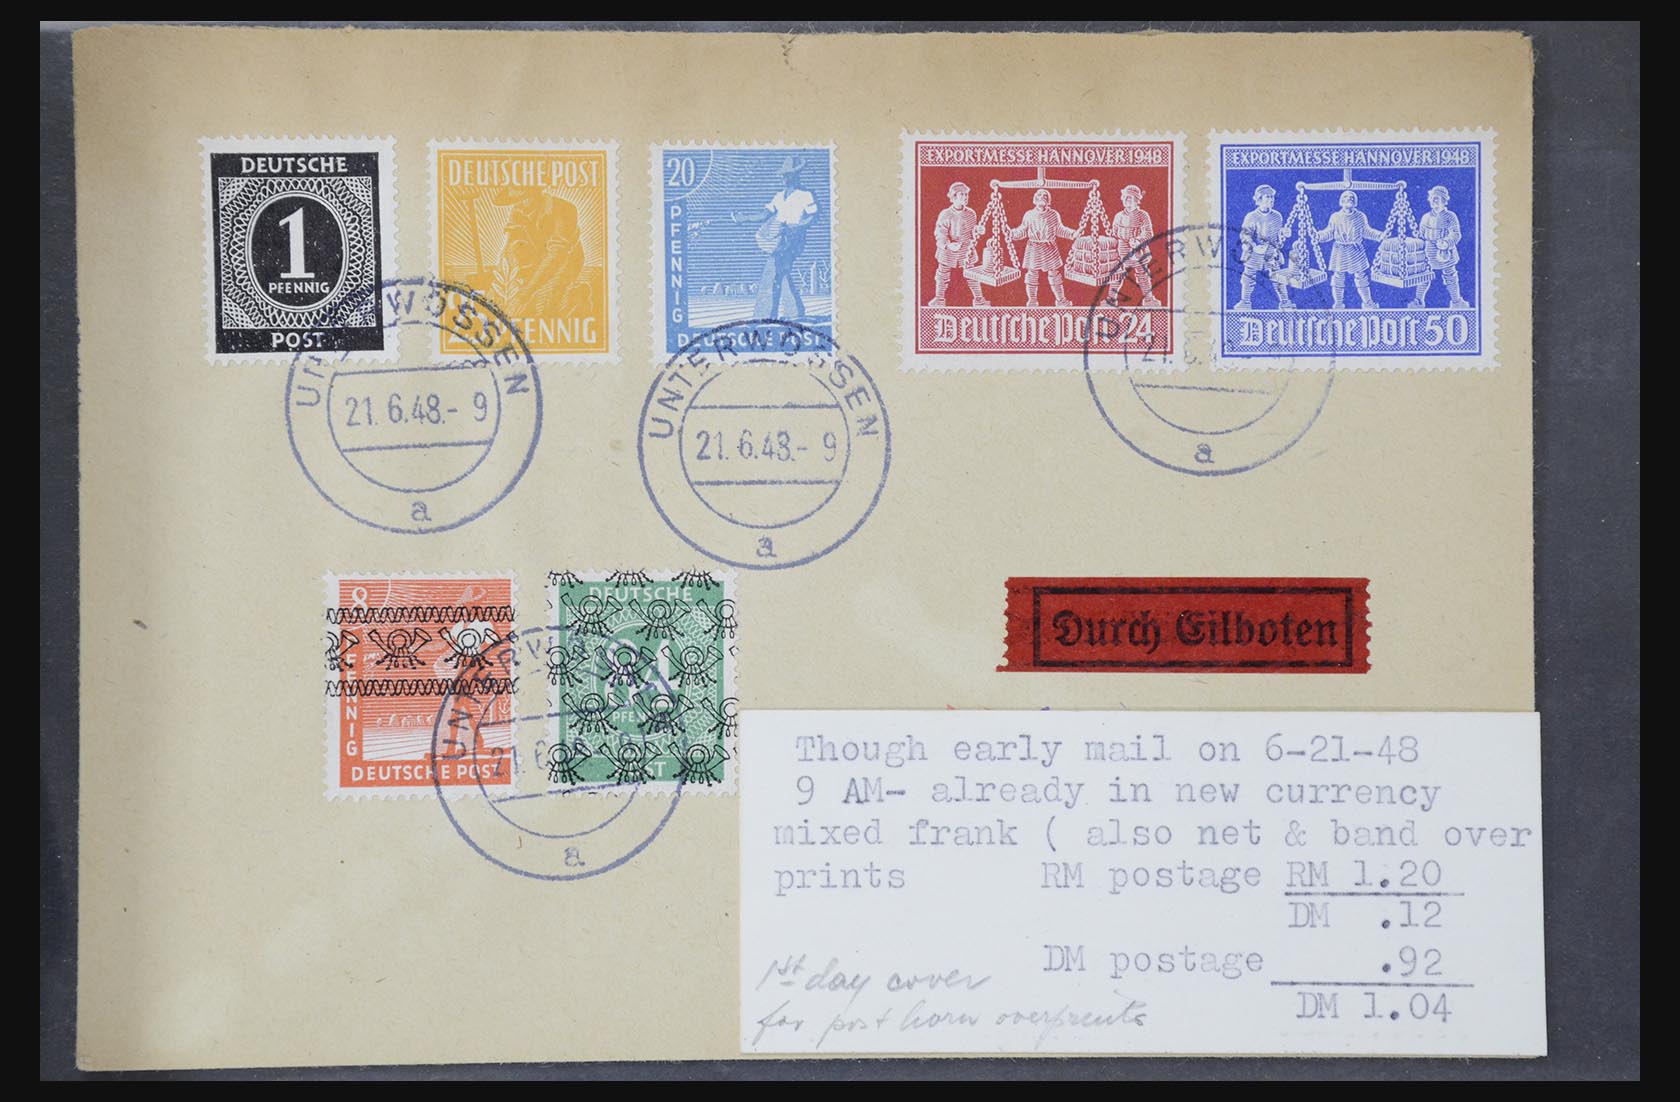 31581 006 - 31581 Duitsland brieven en FDC's 1945-1981.